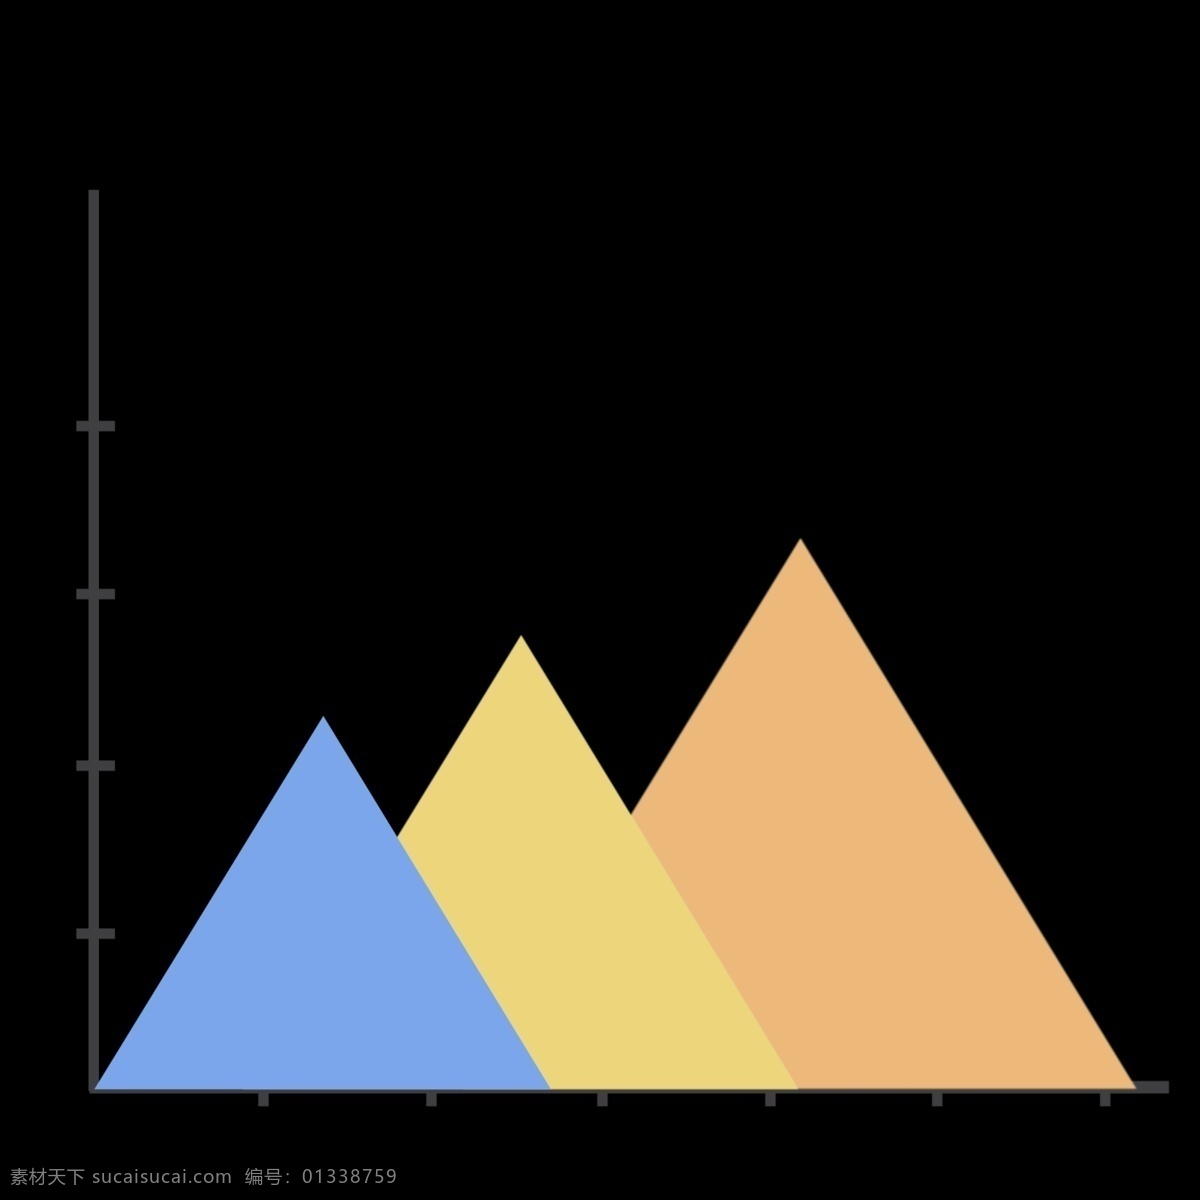 公司 展示 三角形 统计 图 免 抠 三角形统计图 数据分析 汇总 增长图 销售额 彩色 数据统计 趋势图